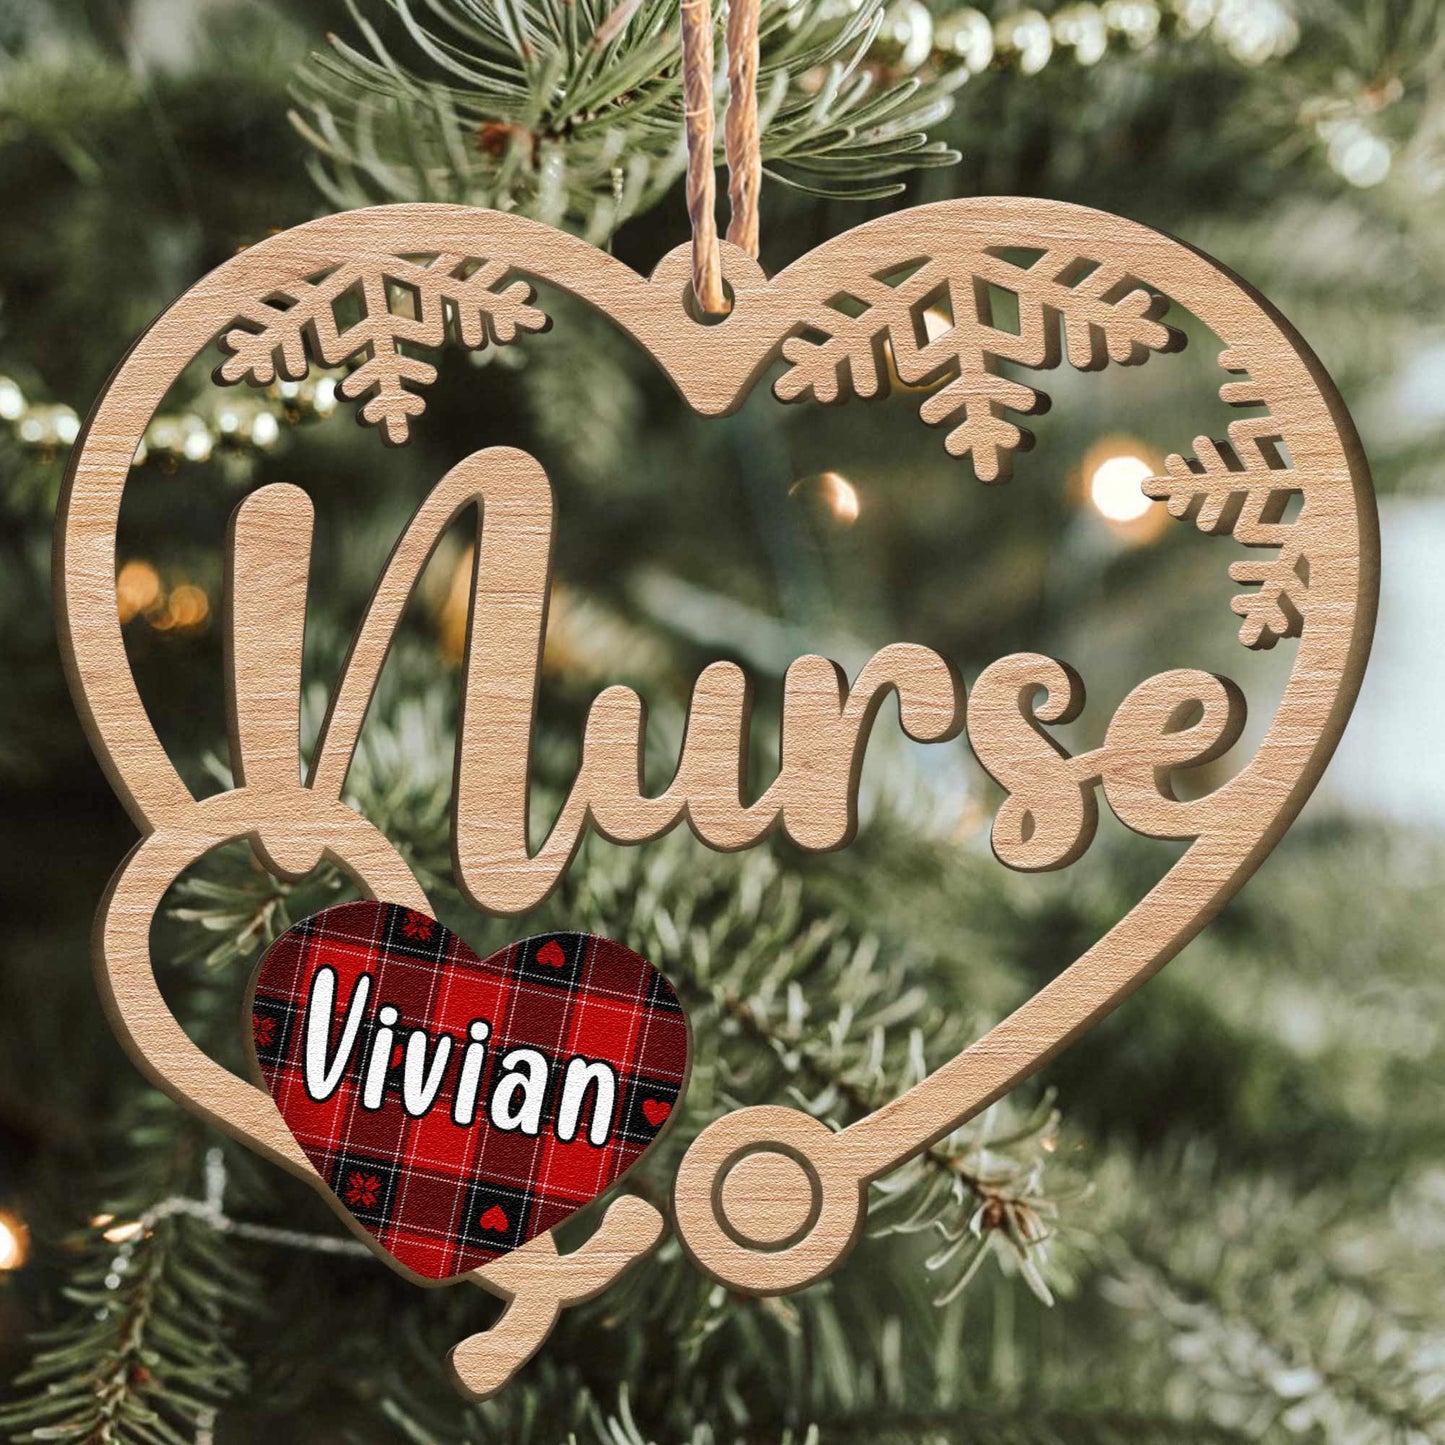 Nurse Ornament - Personalized Wooden Ornament